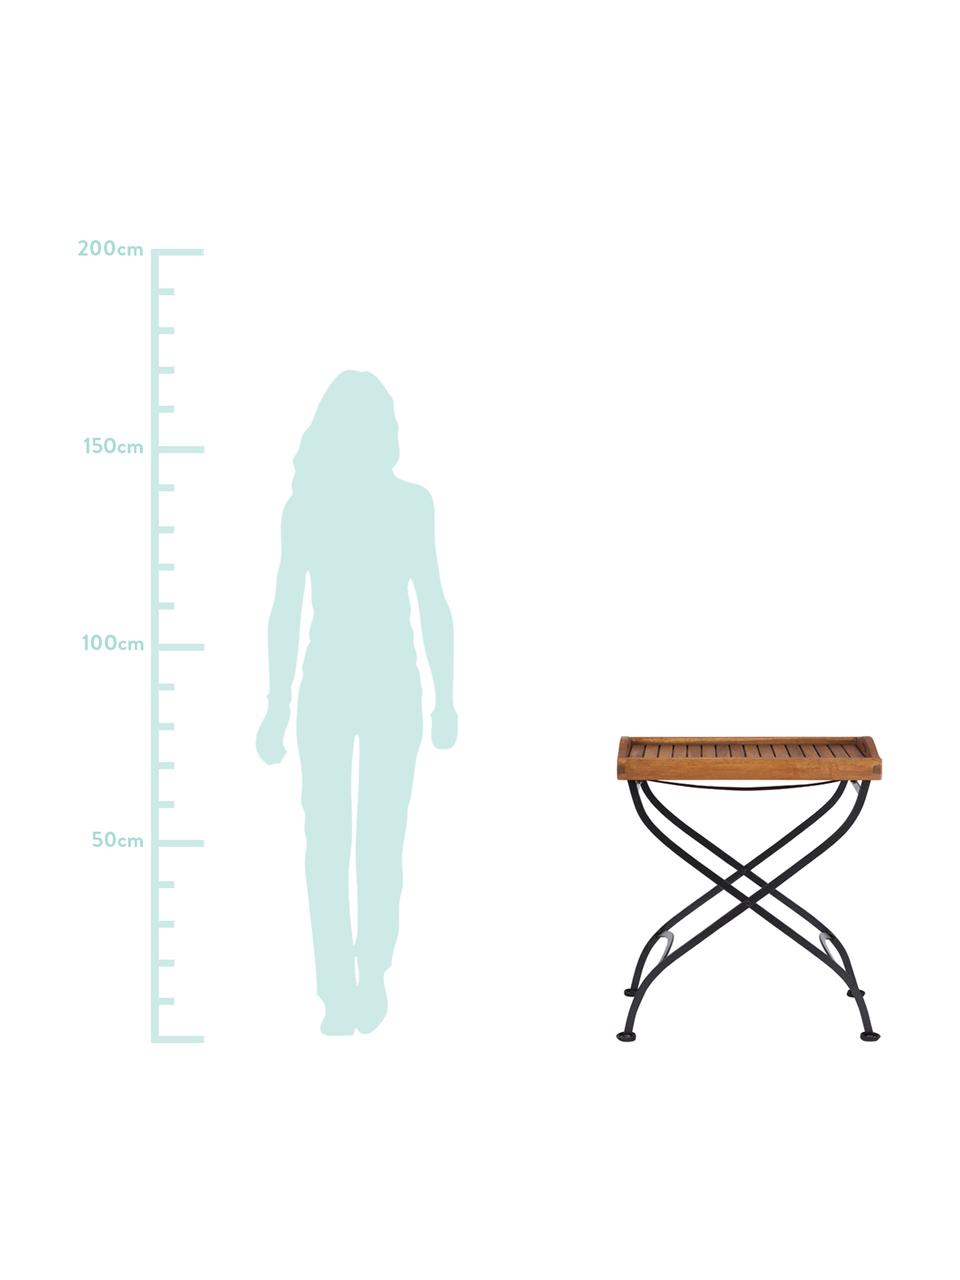 Zahradní stolek - tác s dřevěnou deskouParklife, Černá, akátové dřevo